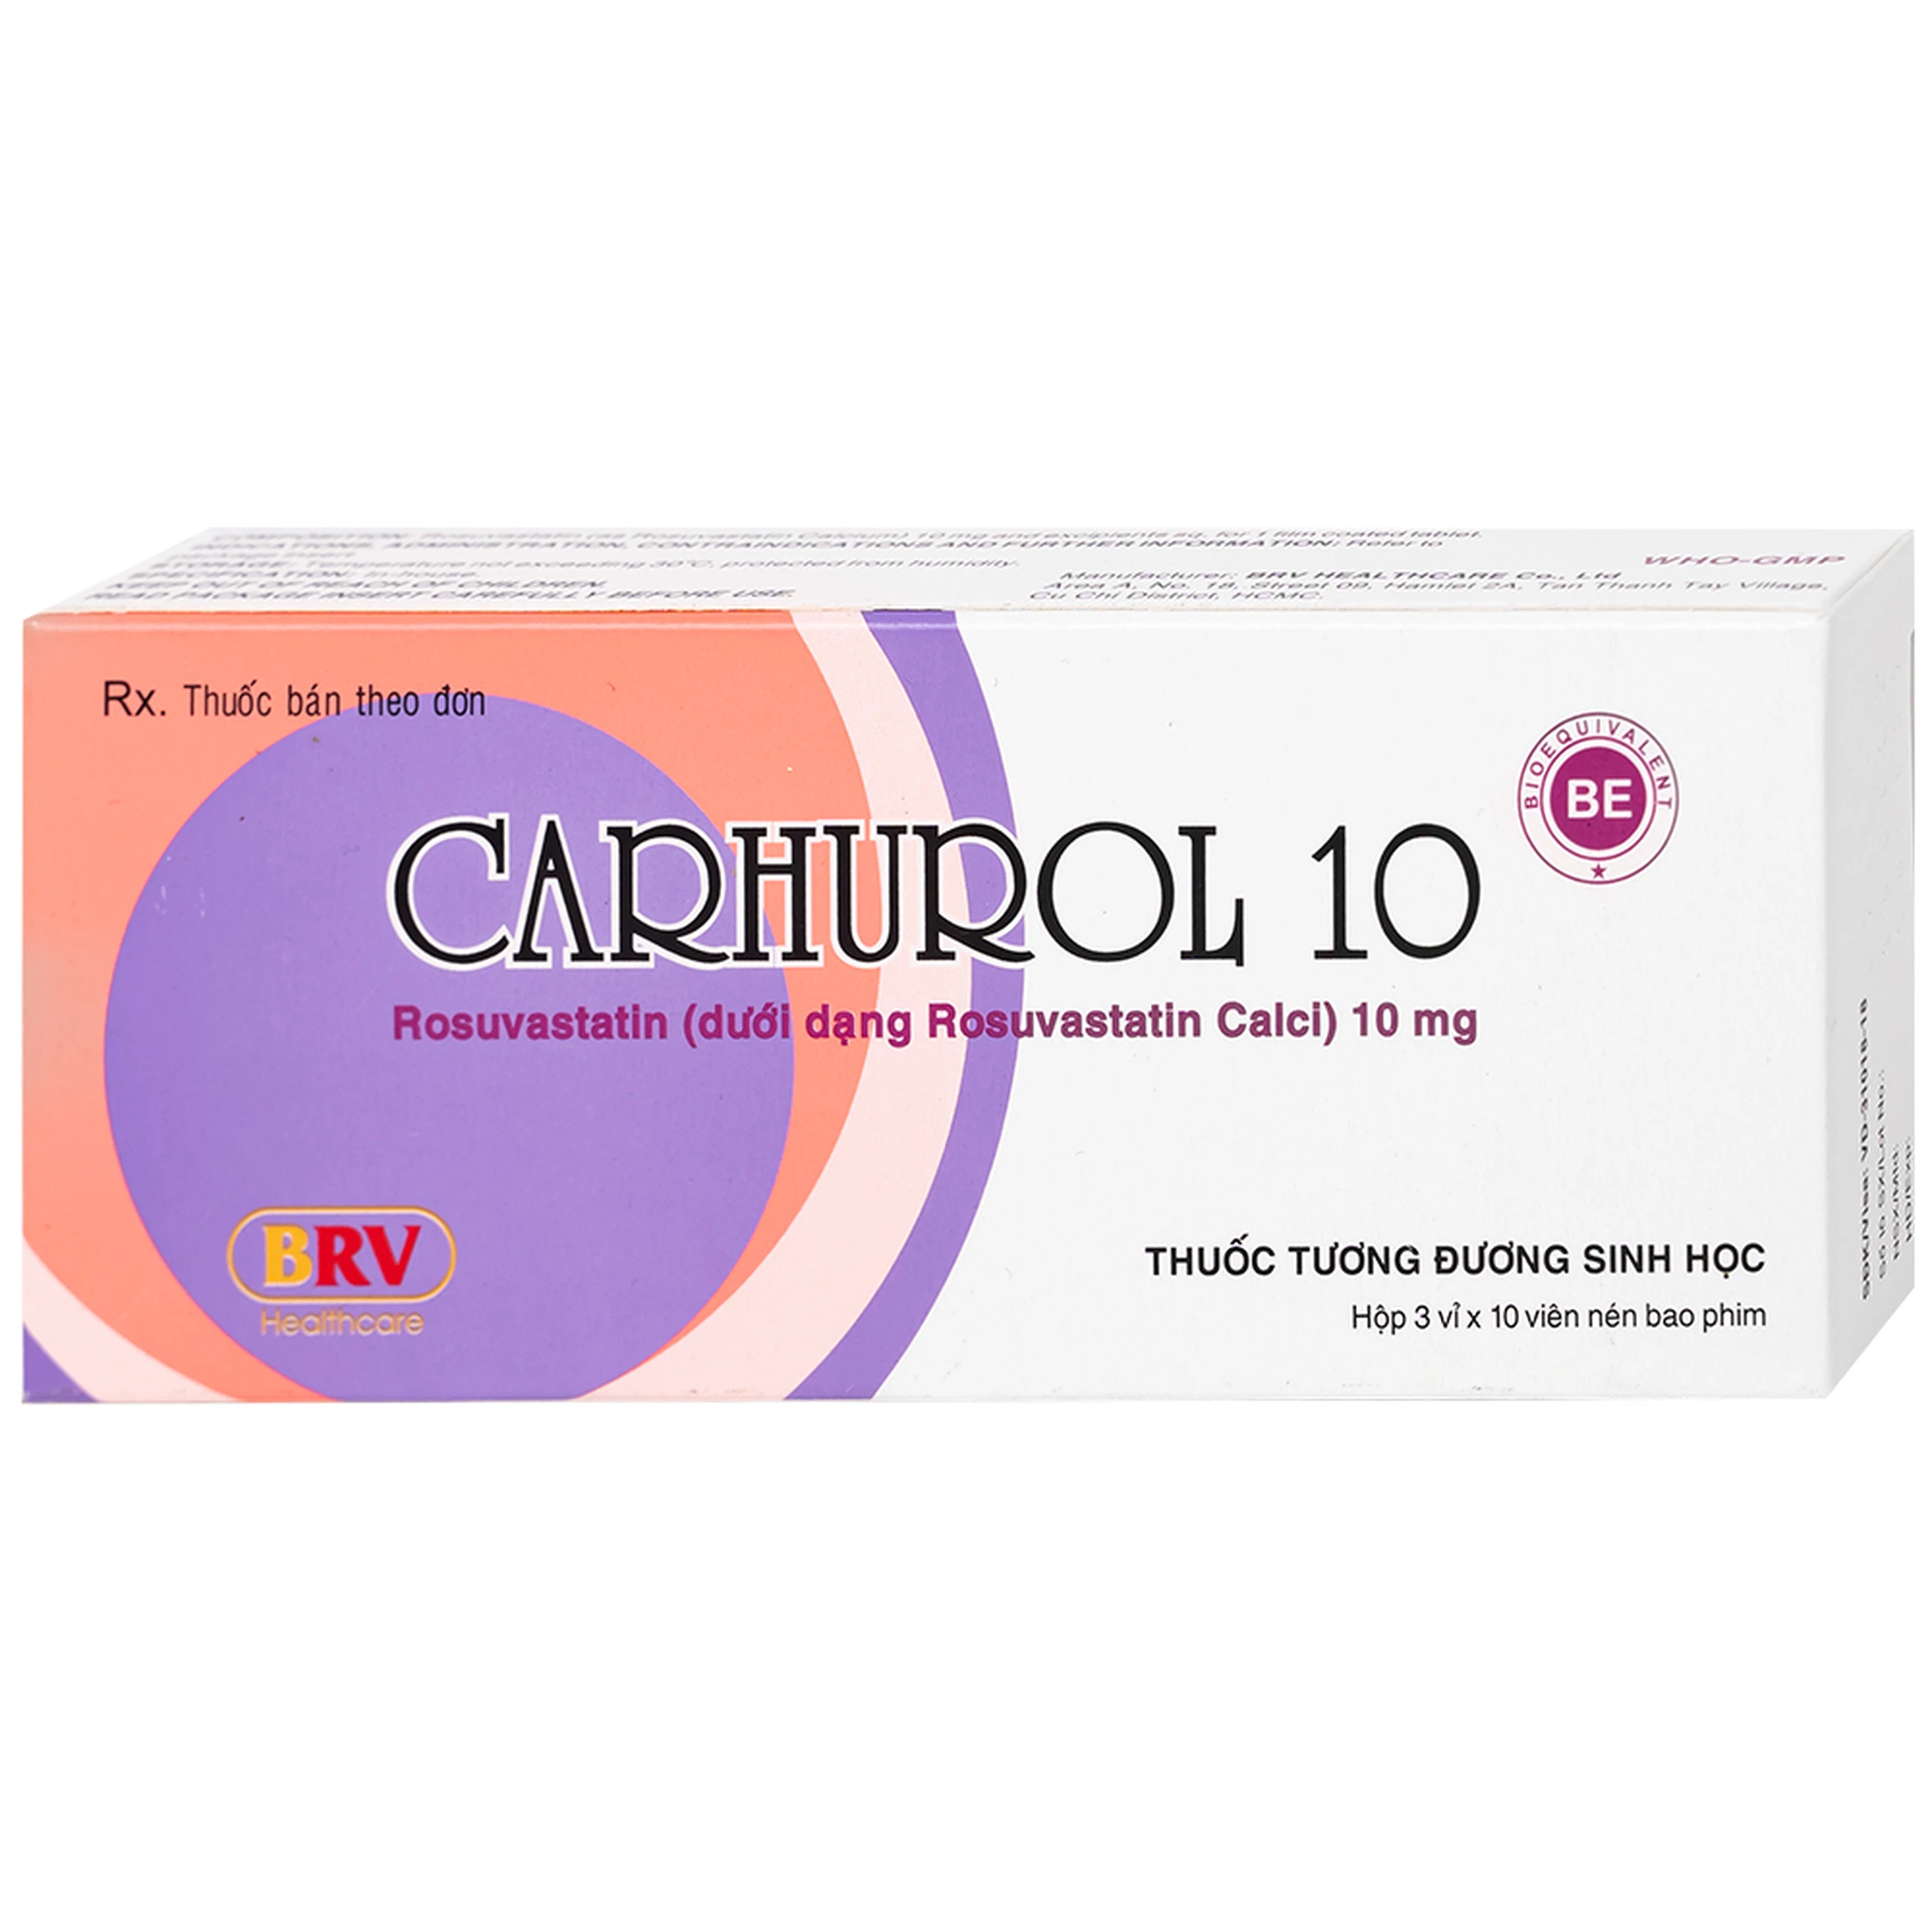 Thuốc Carhurol 10 BRV điều trị tăng cholesterol máu (3 vỉ x 10 viên)